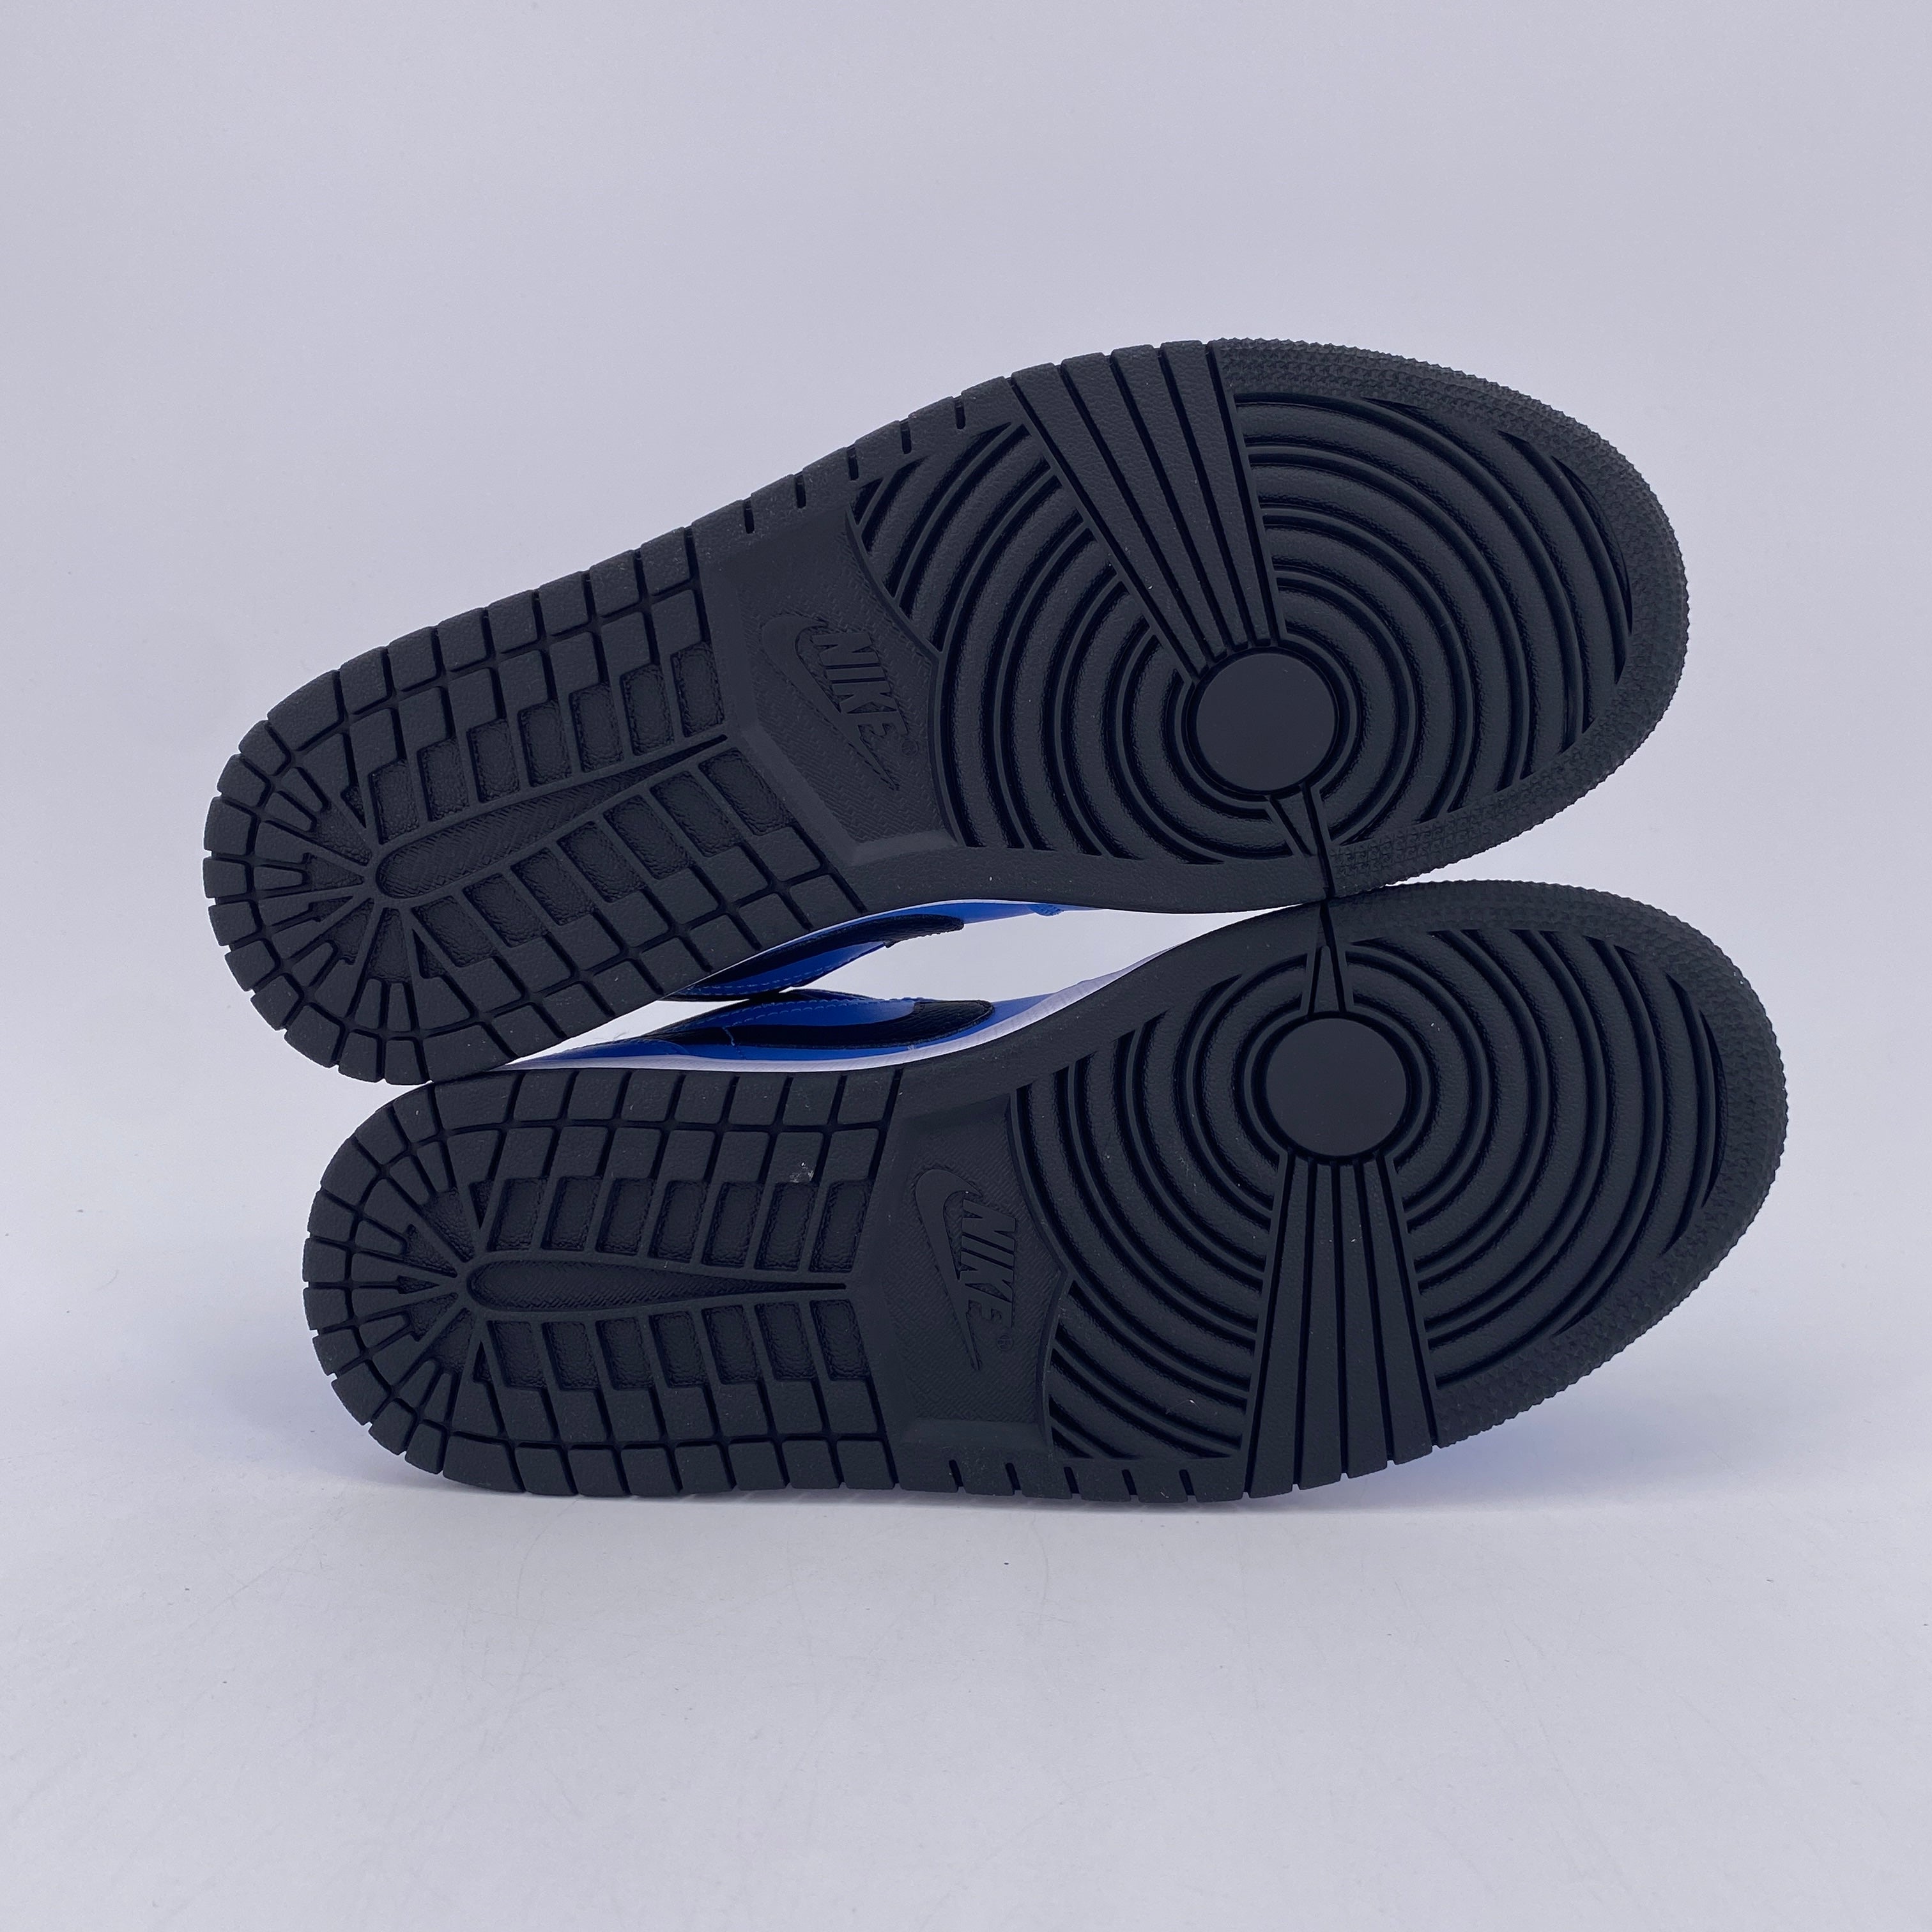 Air Jordan 1 Low &quot;University Blue Black&quot; 2020 New Size 8.5